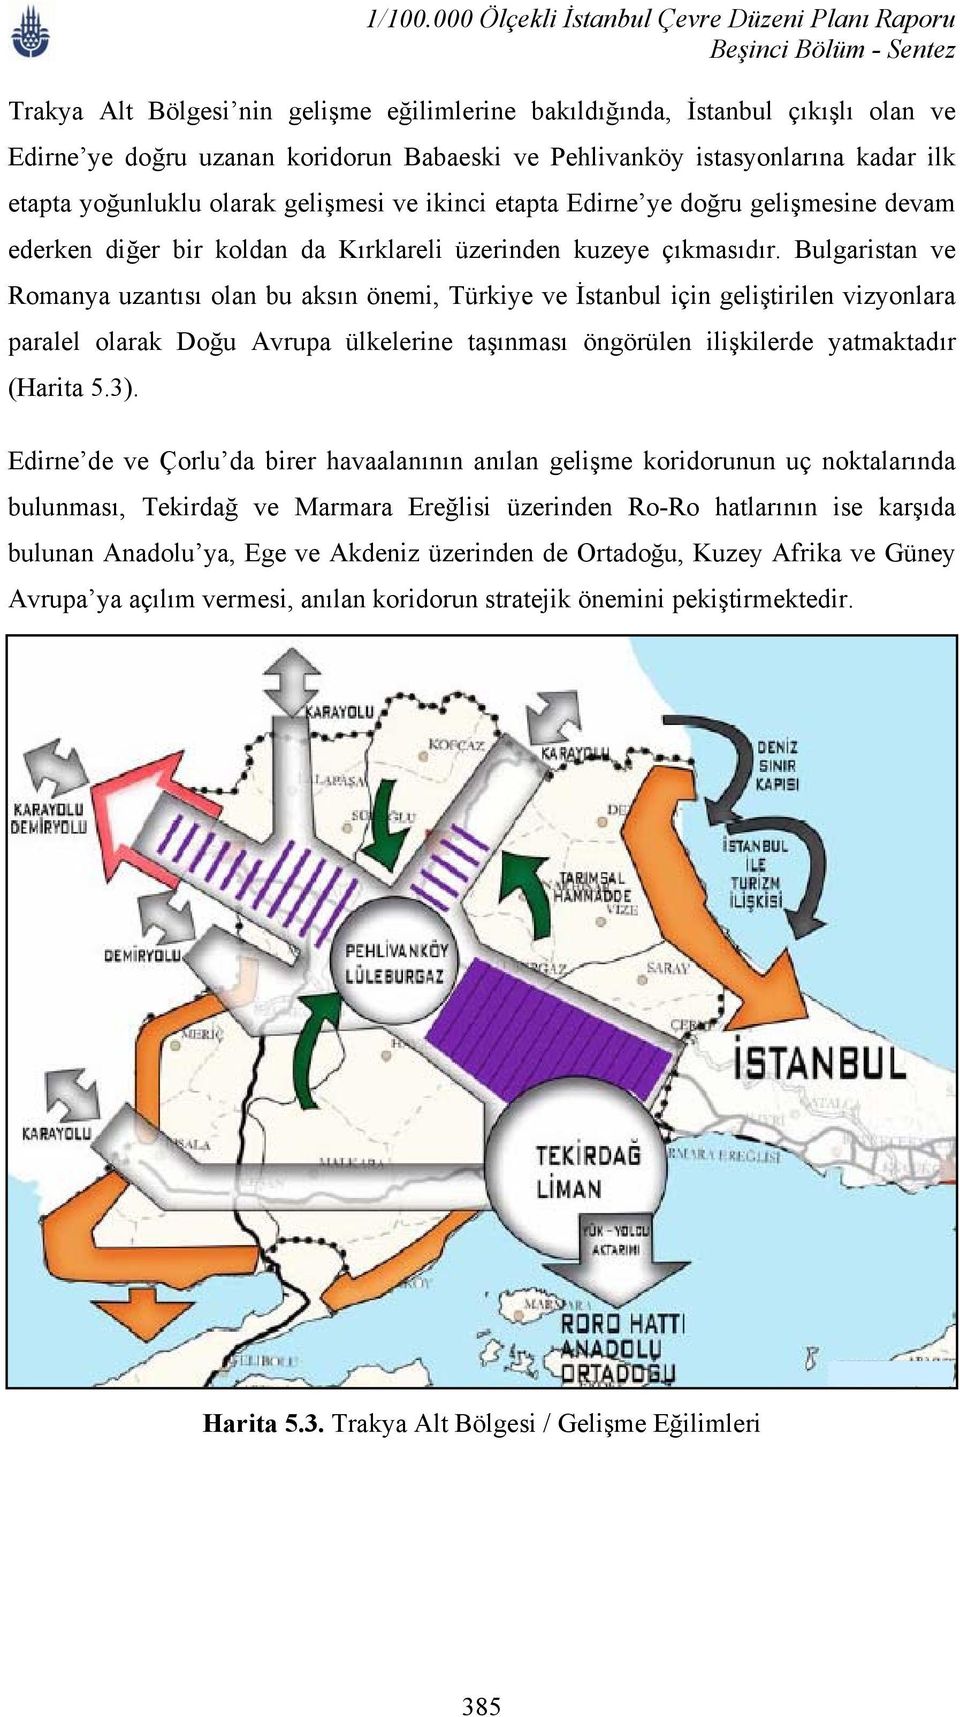 Bulgaristan ve Romanya uzantısı olan bu aksın önemi, Türkiye ve İstanbul için geliştirilen vizyonlara paralel olarak Doğu Avrupa ülkelerine taşınması öngörülen ilişkilerde yatmaktadır (Harita 5.3).